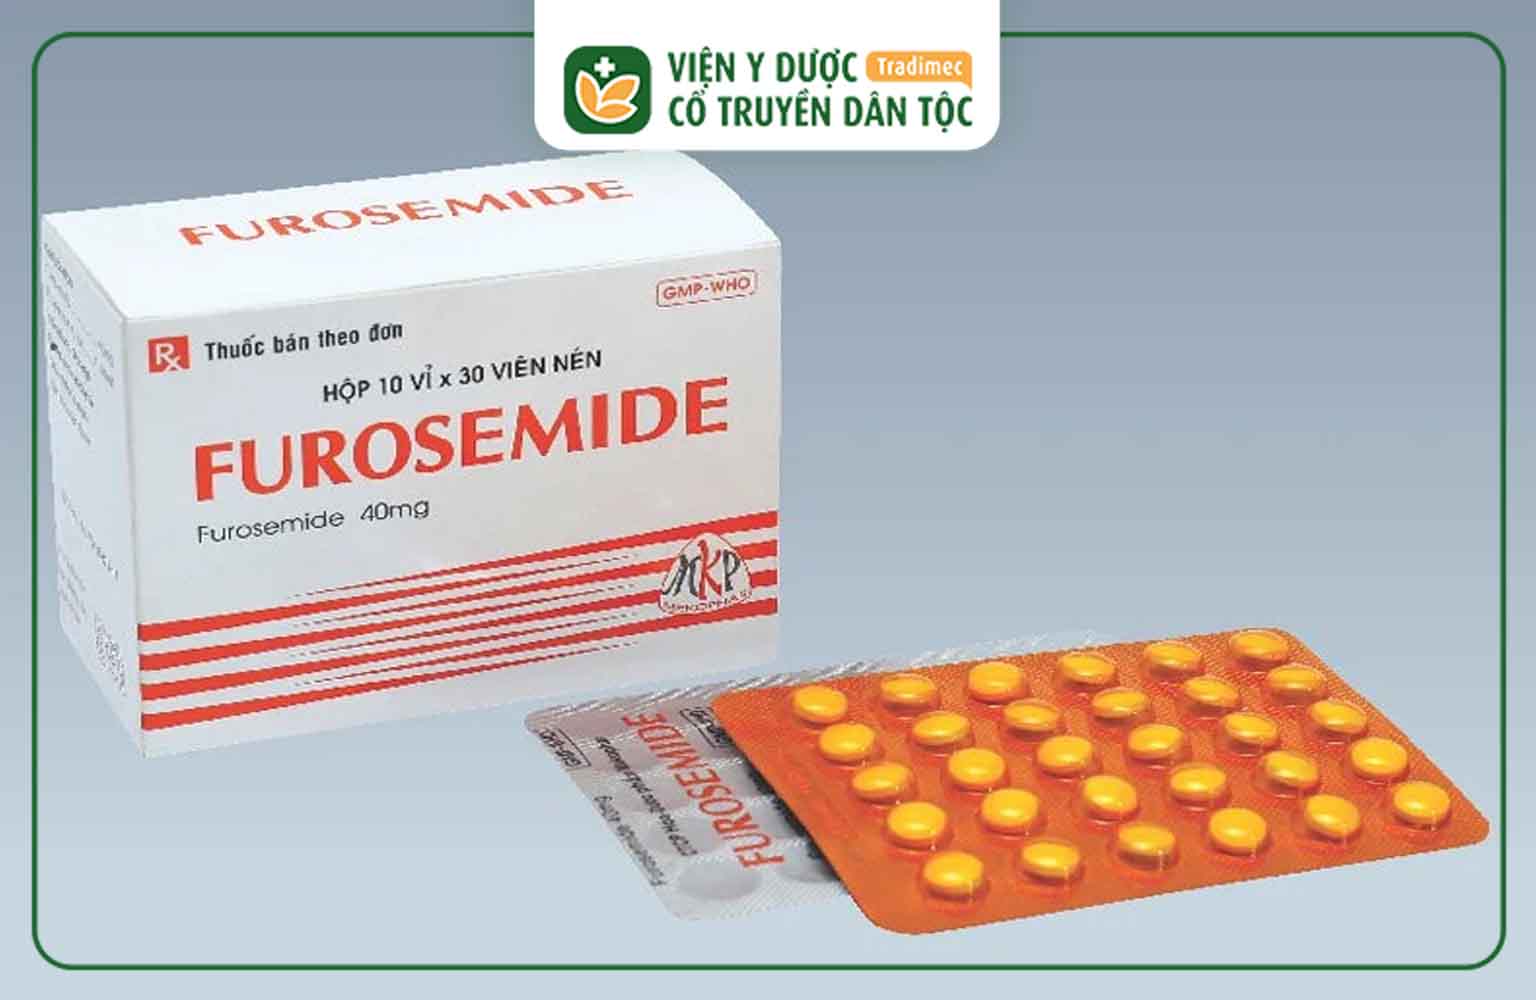 Furosemid có thành phần chính là hoạt chất Furosemide hàm lượng 40mg